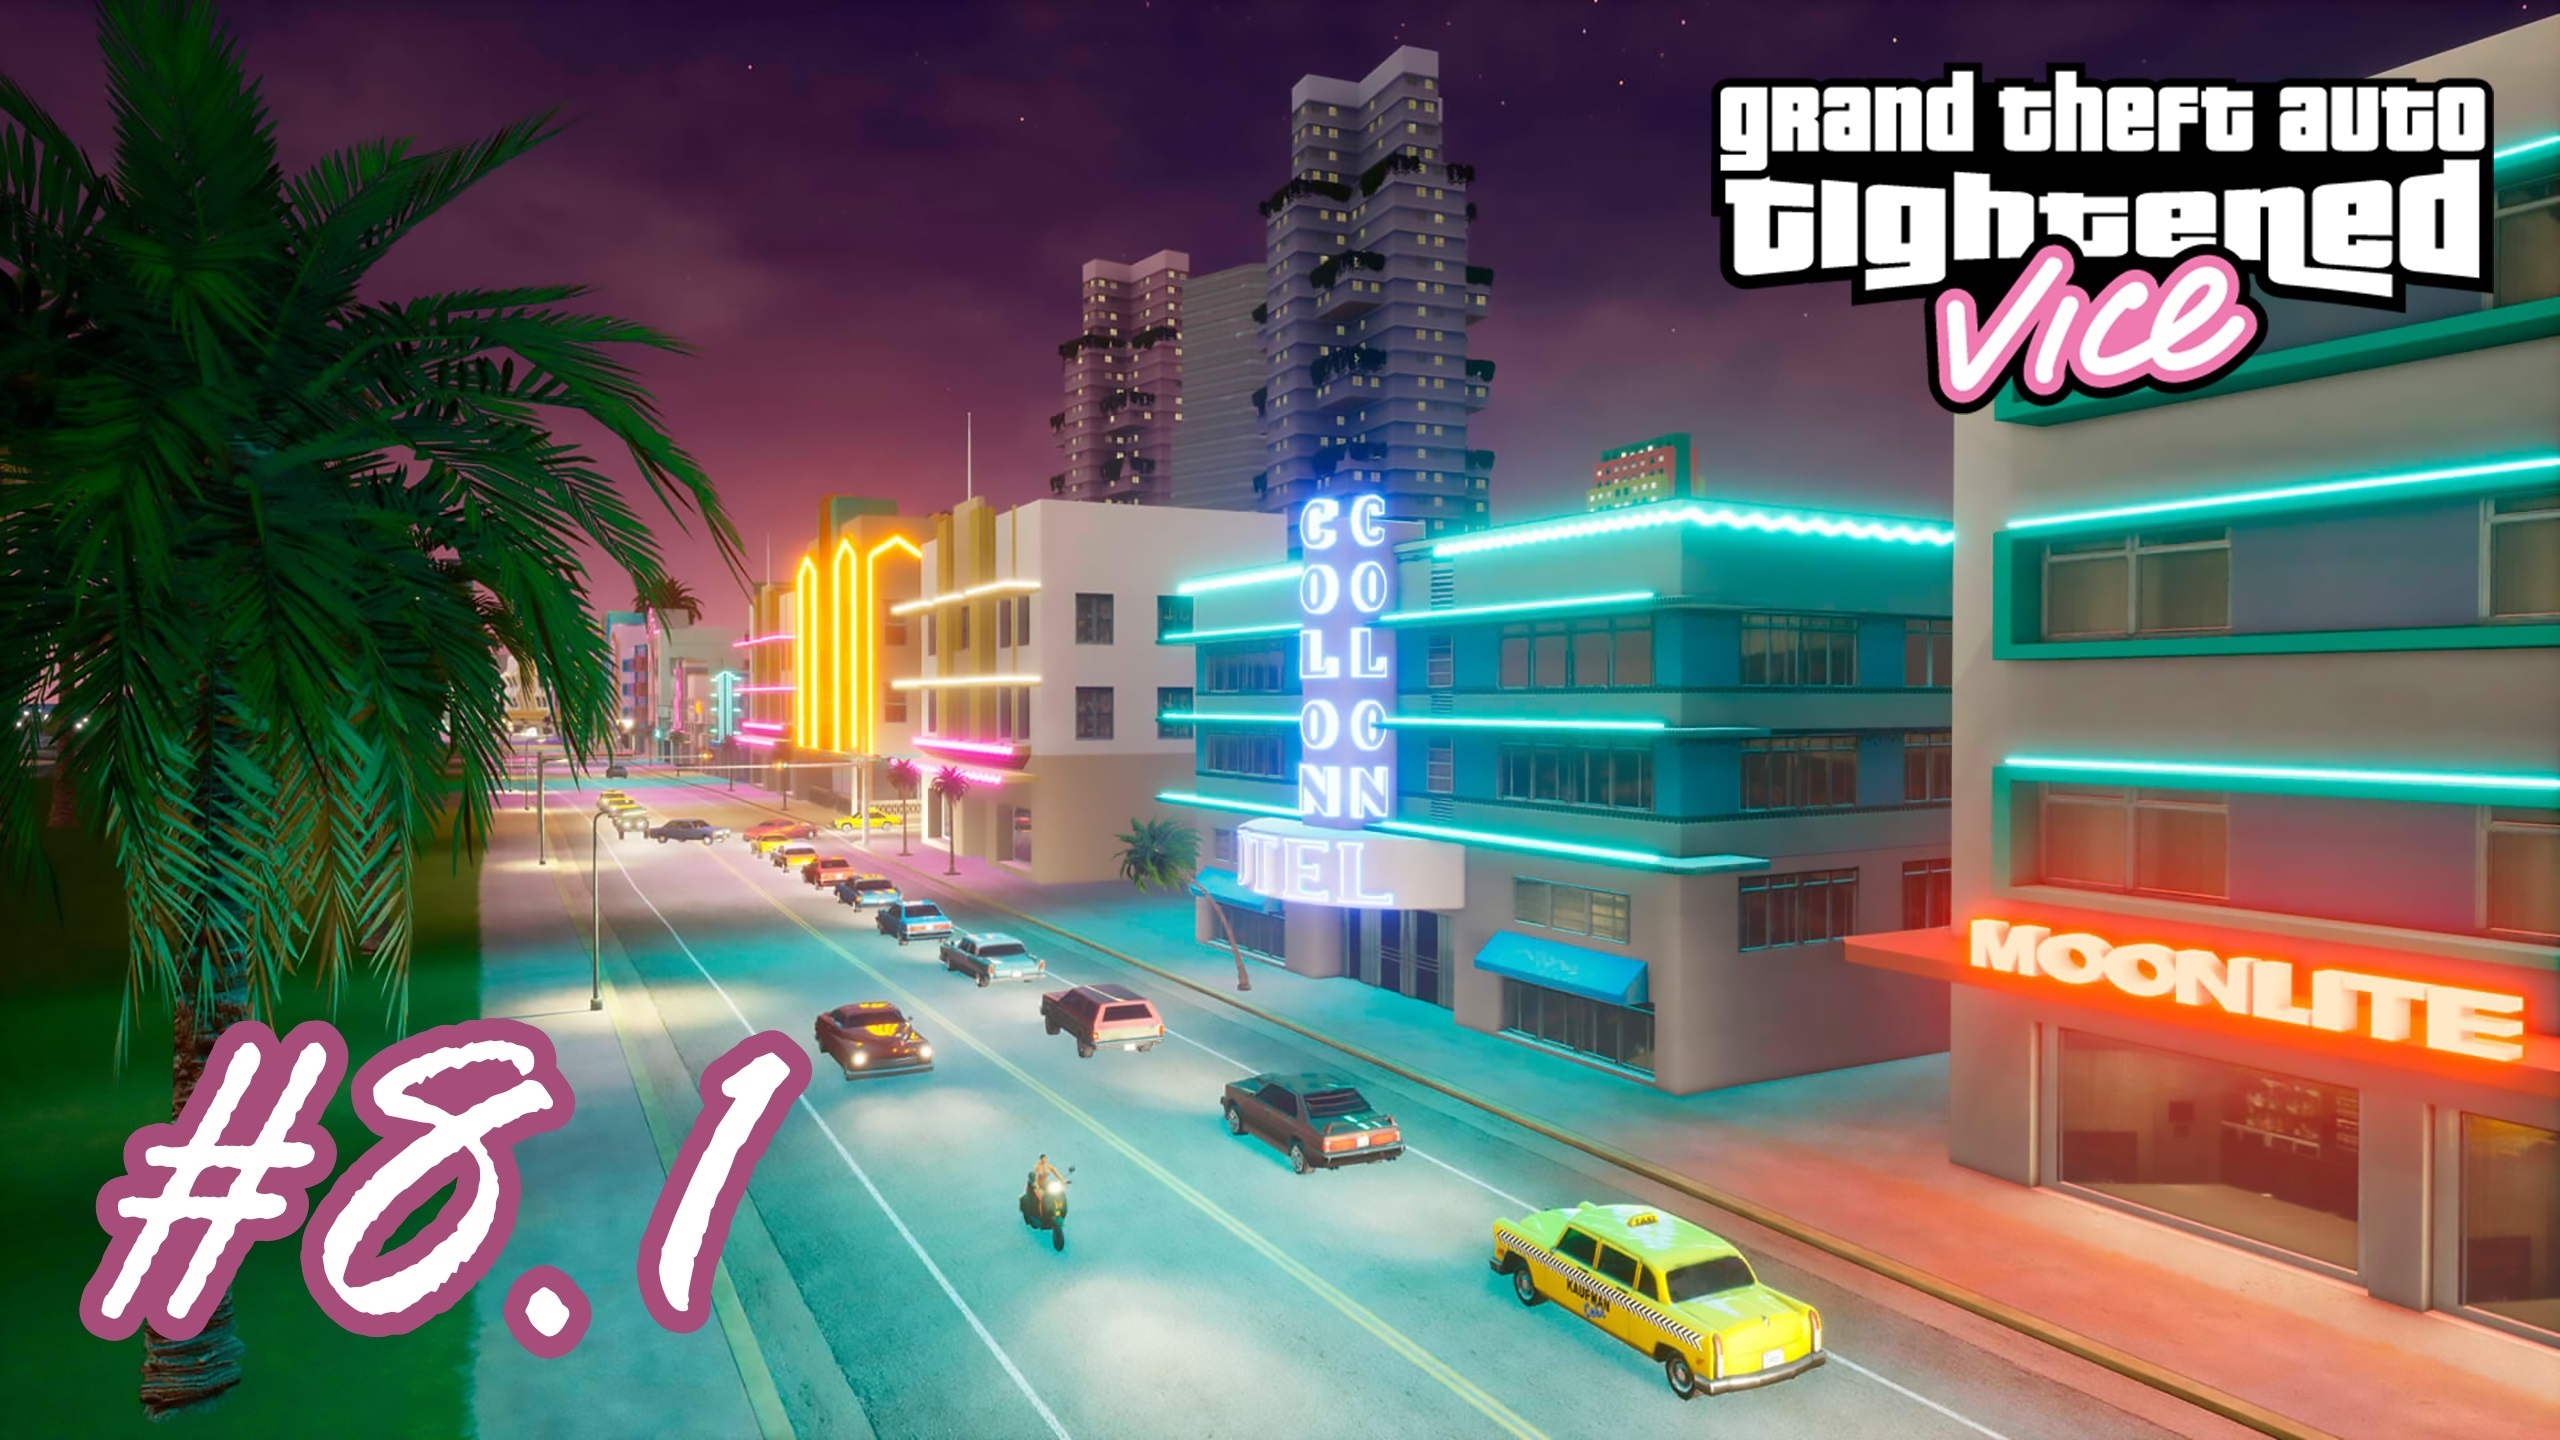 Grand Theft Auto VС: Tightened Vice - Трюкач на PCJ #8.1 (100%)